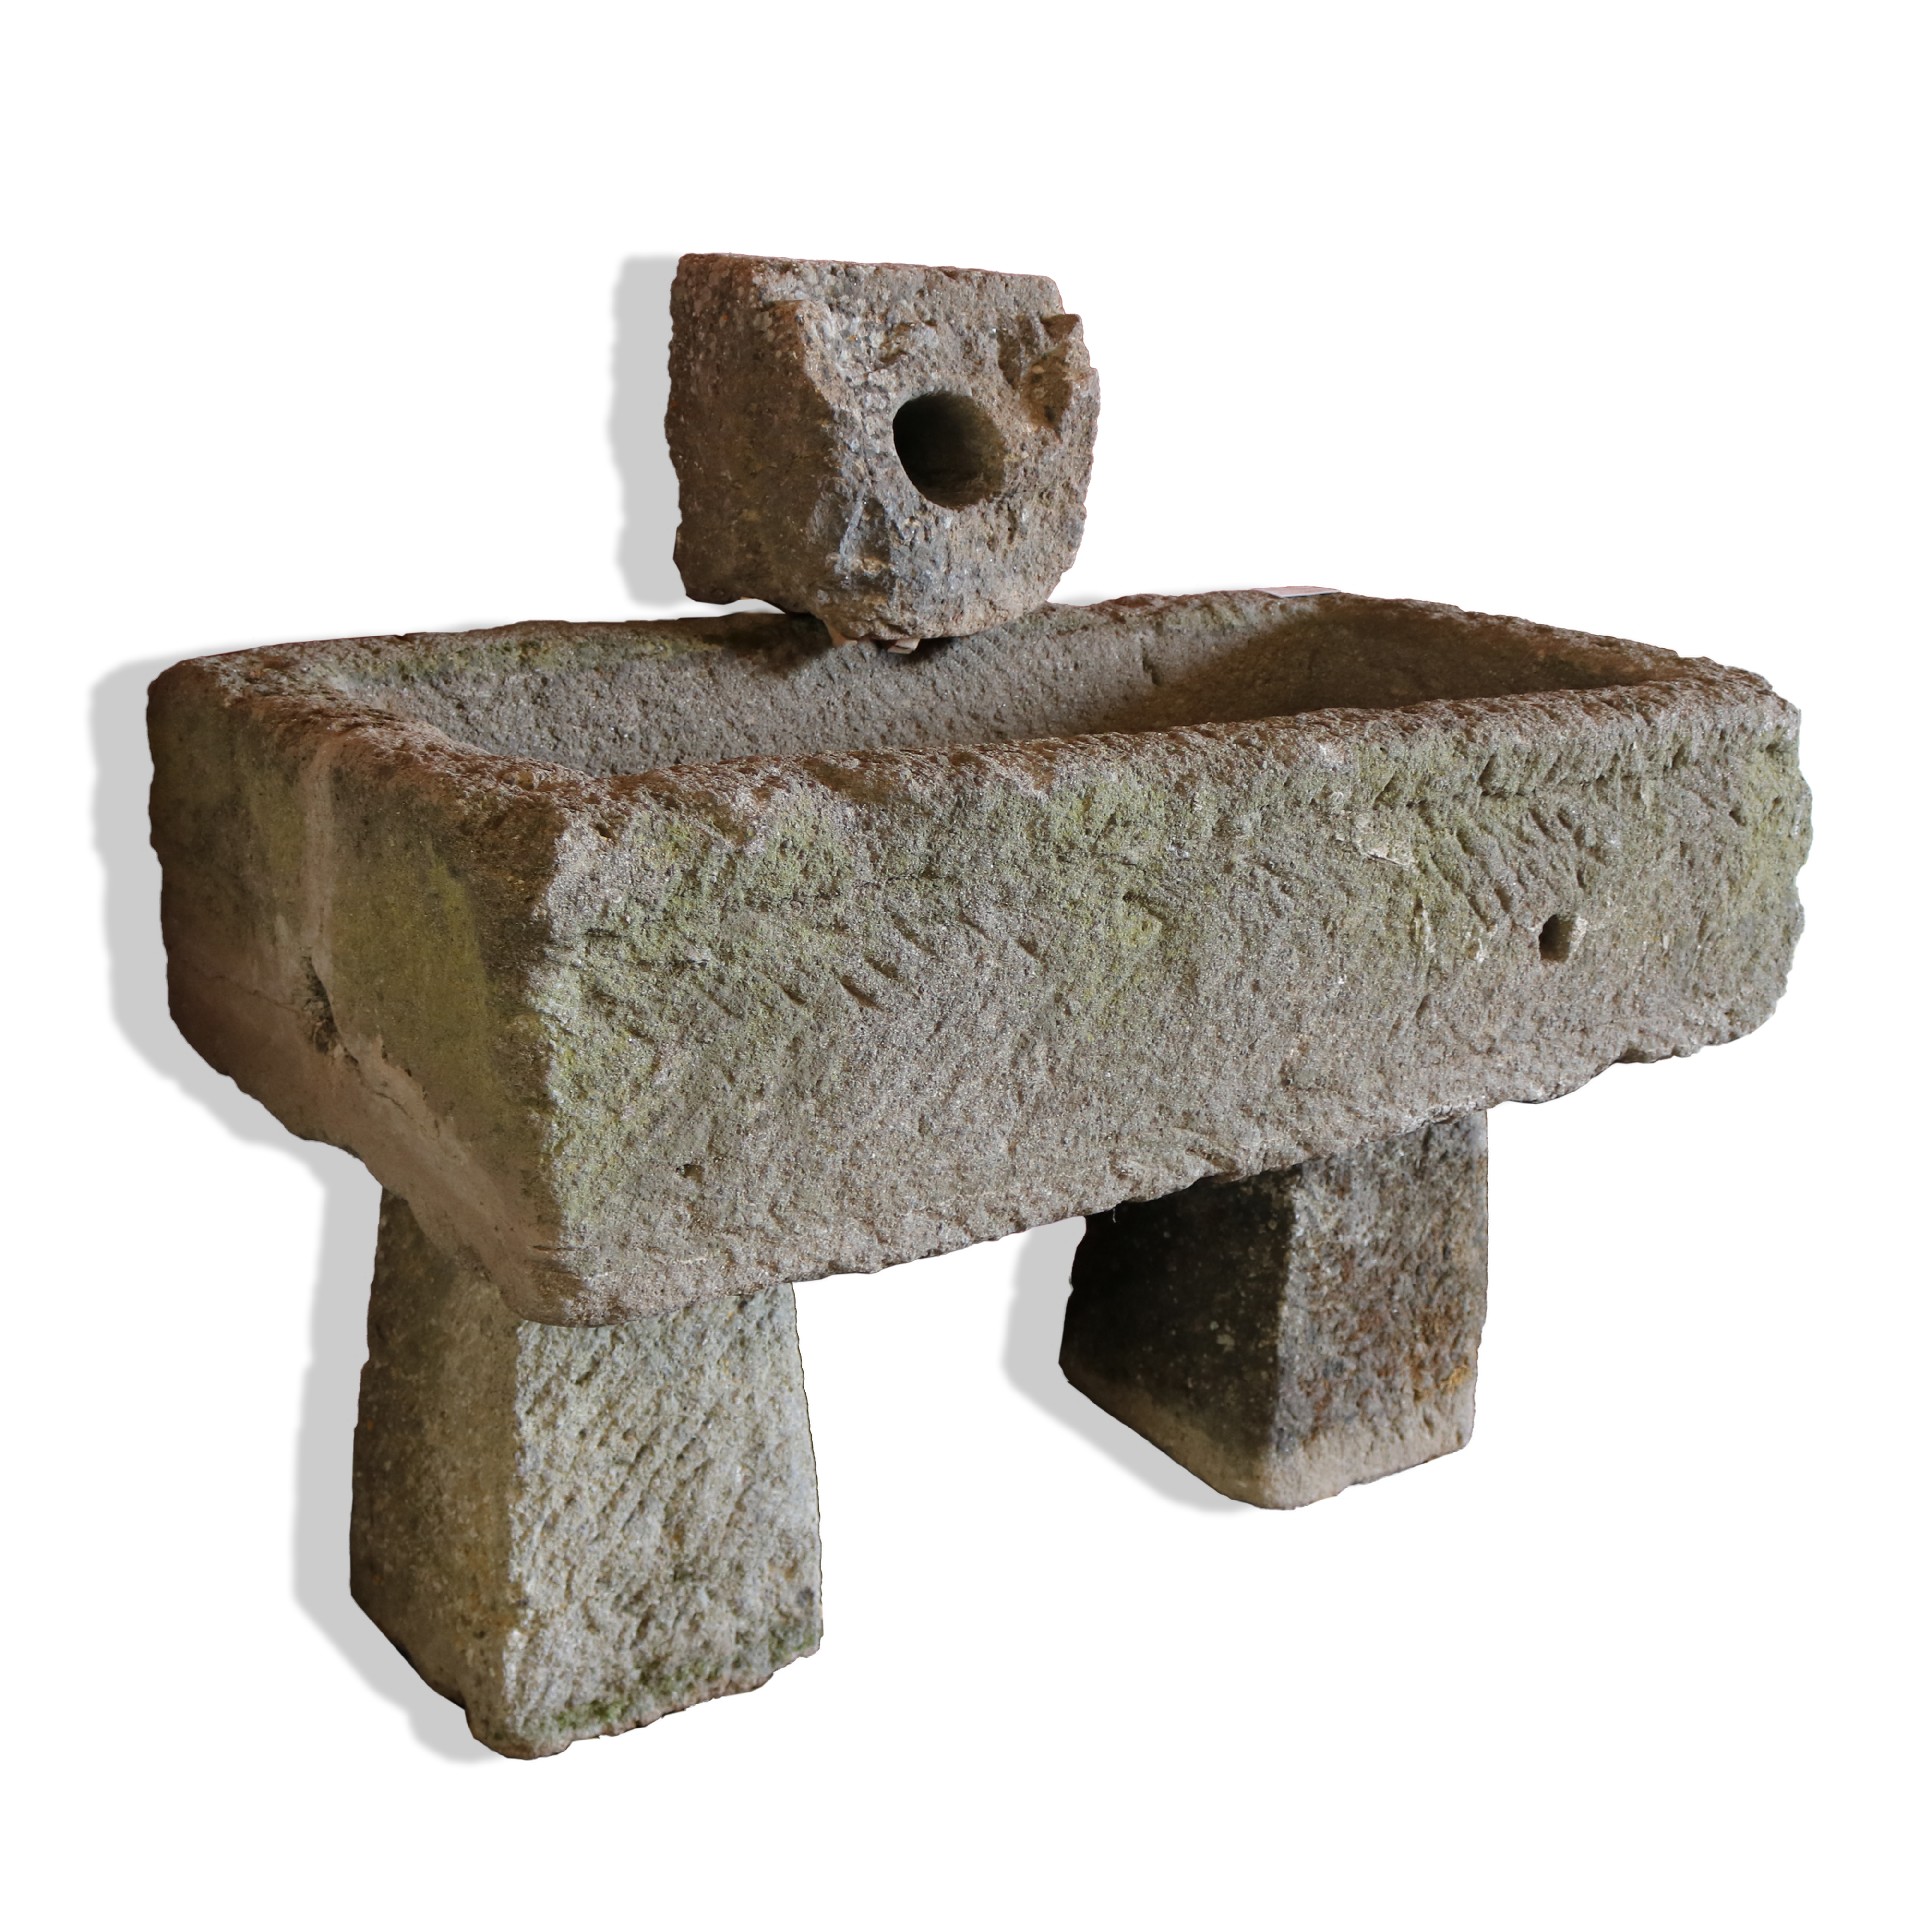 Antica fontana in pietra da muro. - Fontane Antiche - Arredo Giardino - Prodotti - Antichità Fiorillo